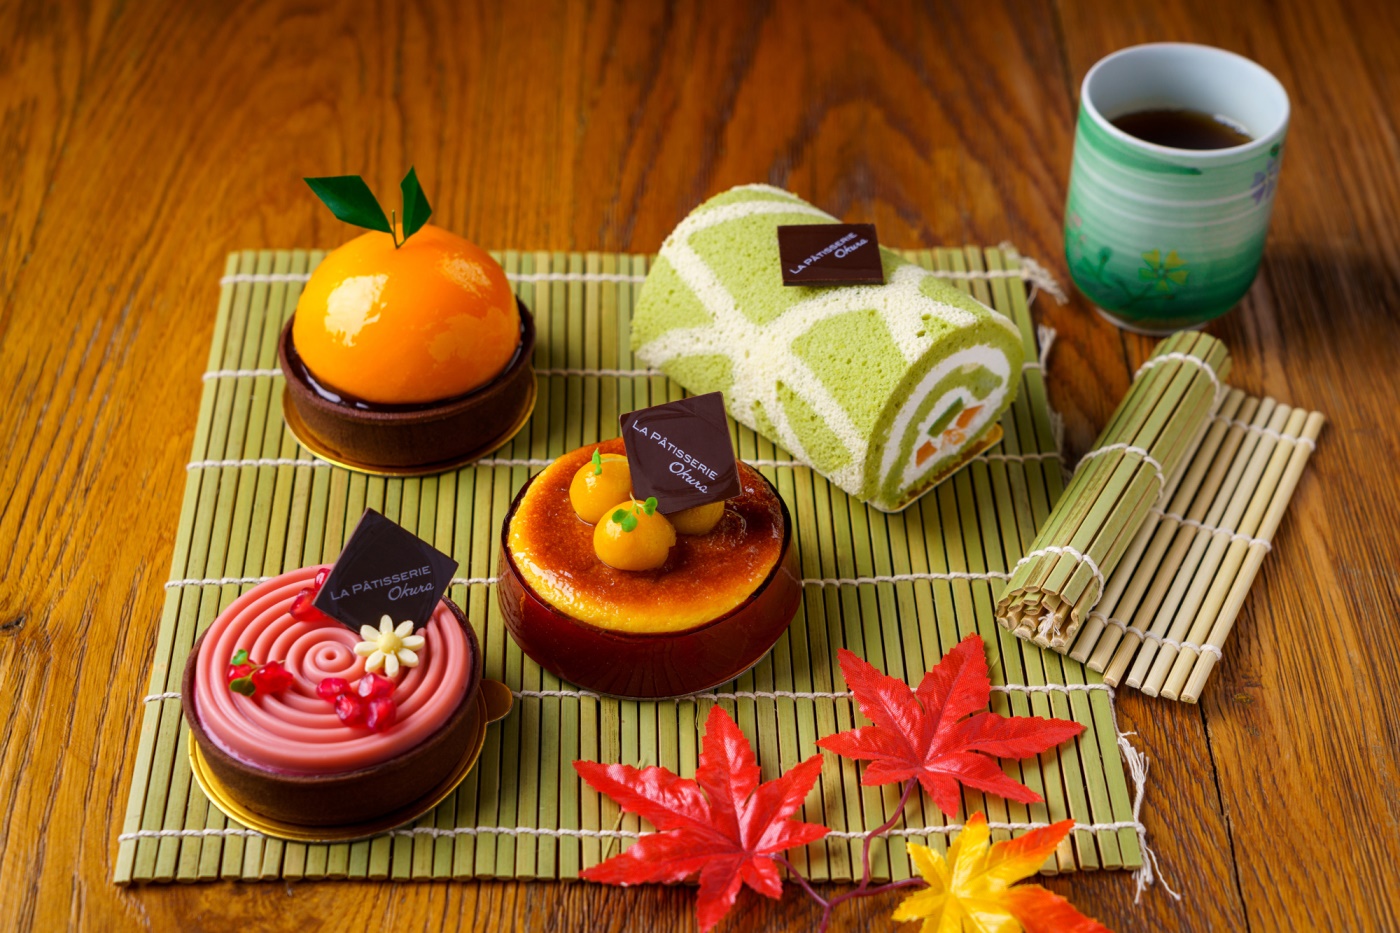 ร้านขนม ลา พาทิสเซอร์รีแนะนำขนมเค้กในสีสันฤดูใบไม้เปลี่ยนสีที่ประเทศญี่ปุ่น